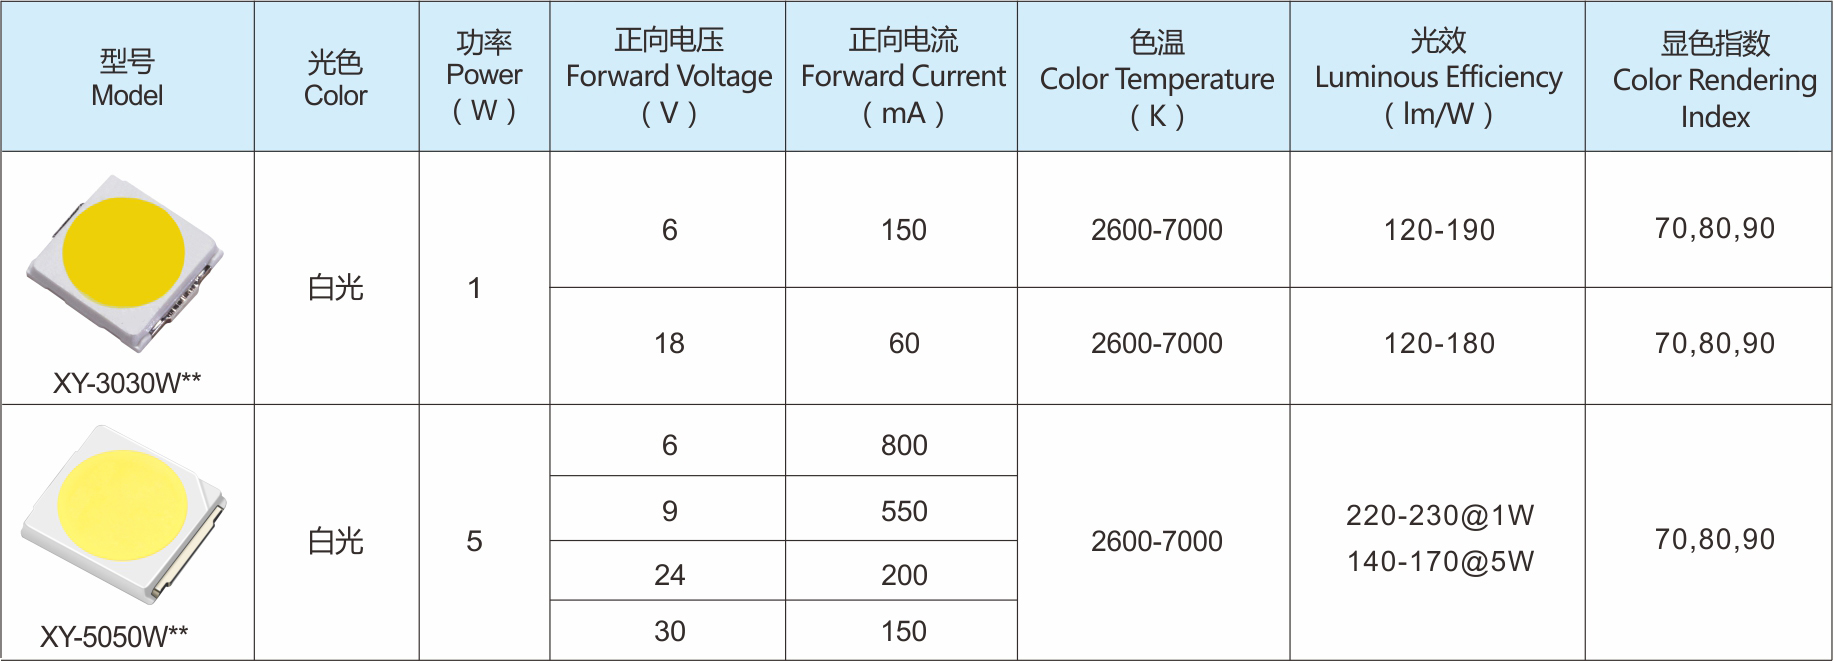 EMC白光系列LED灯珠产品选型表